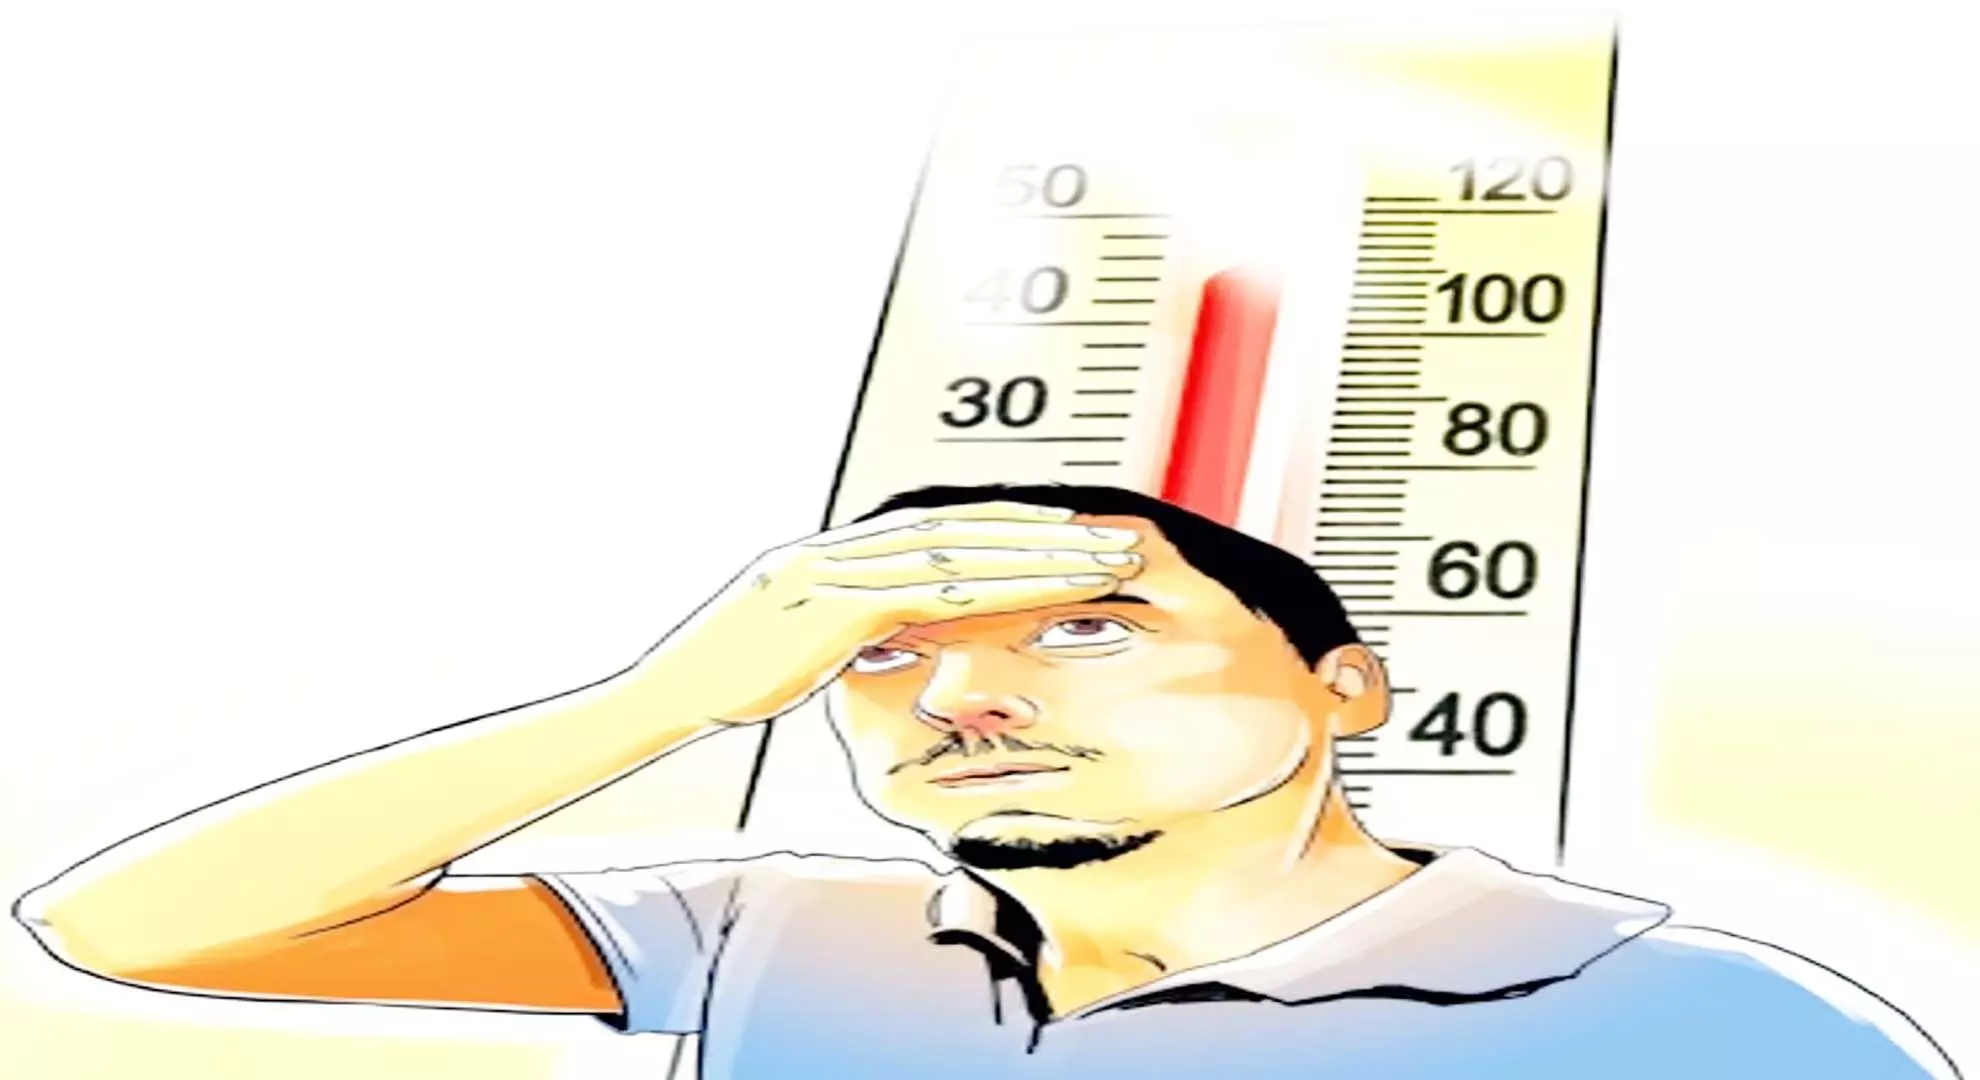 हैदराबाद: डॉक्टरों का कहना है कि बढ़ता पारा, नमी का स्तर गर्मी से होने वाली बीमारियों को बढ़ा सकता है